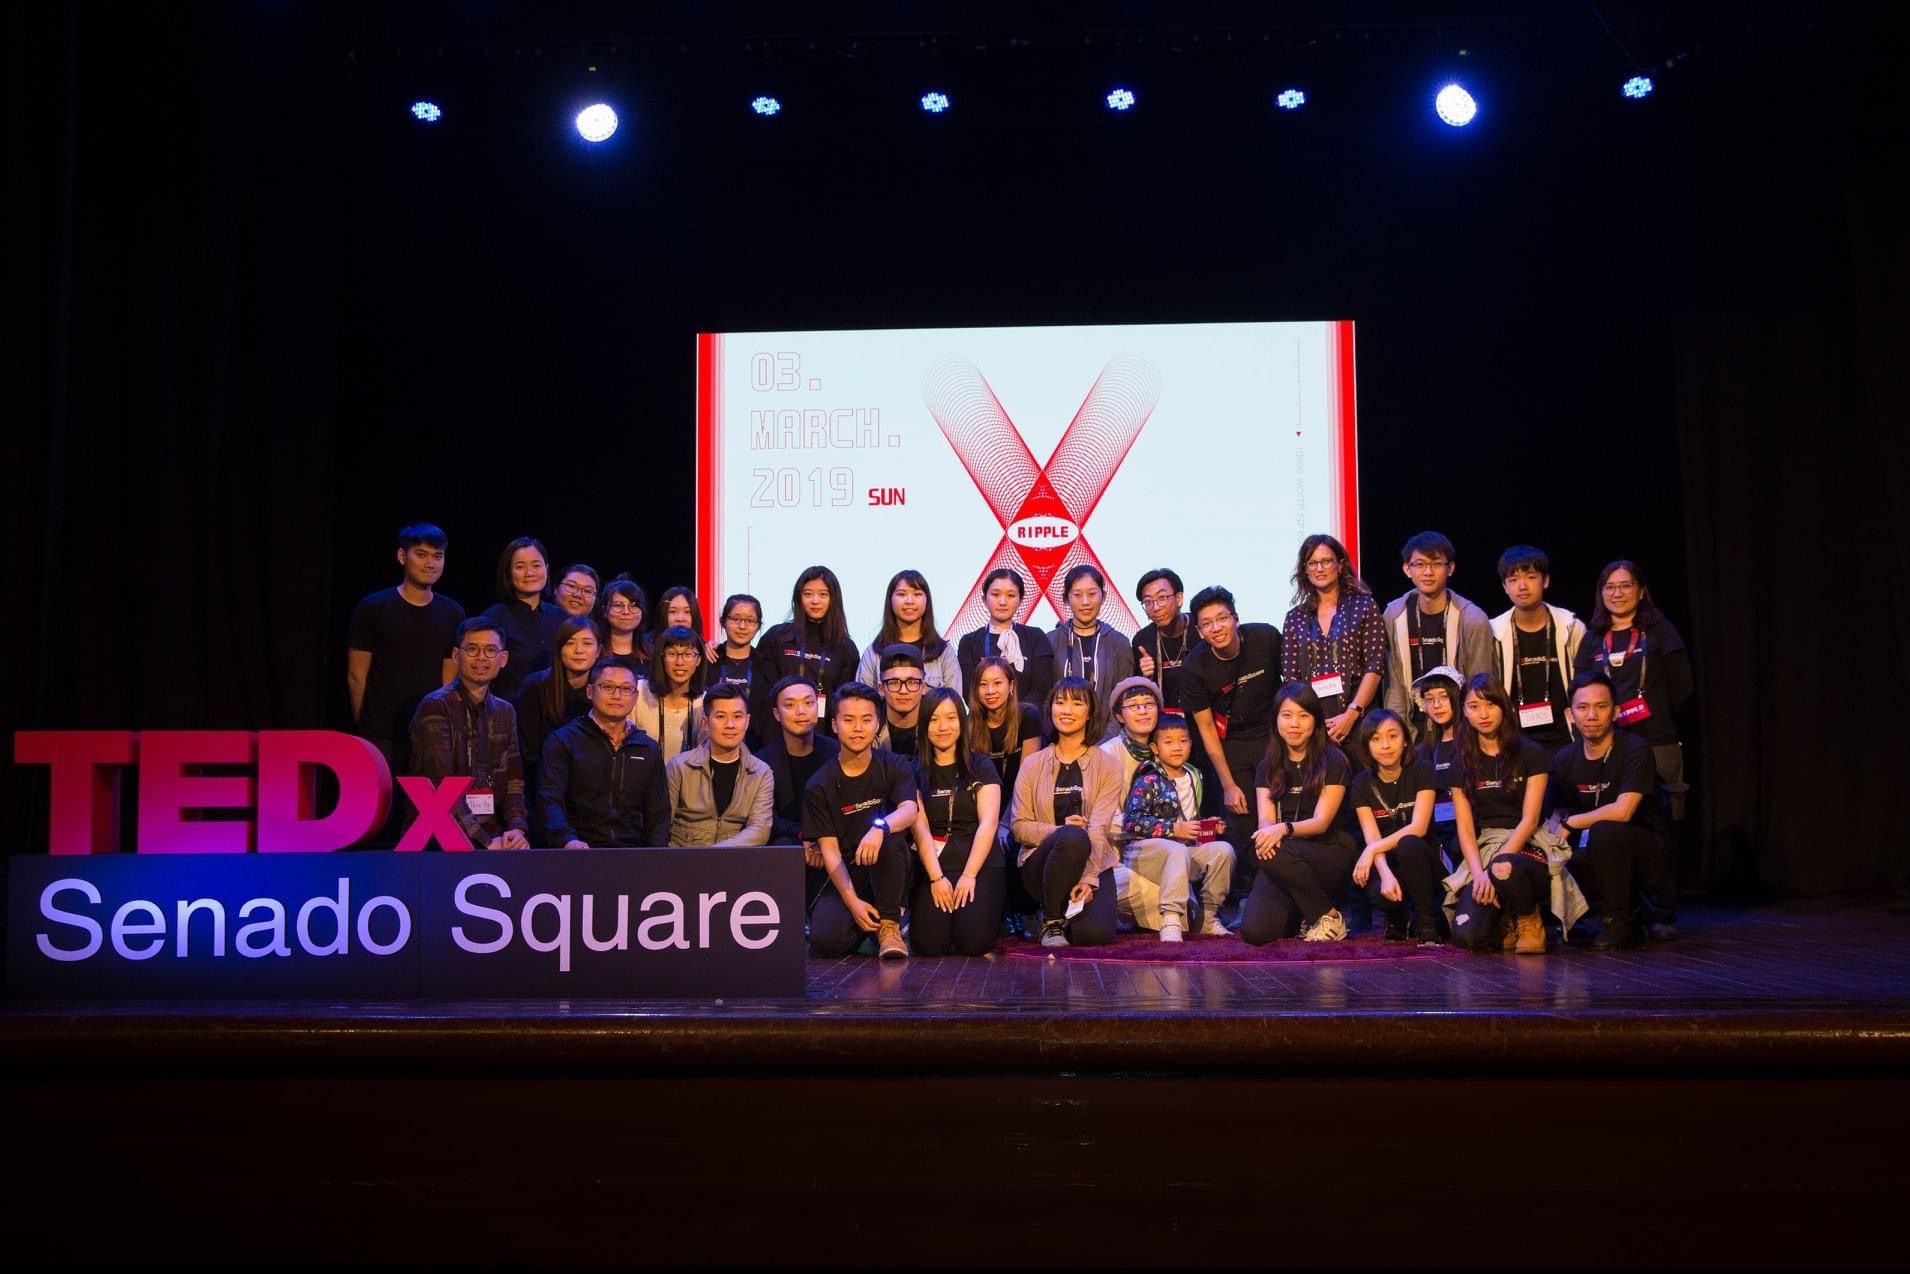 TEDX Senado Square | Saúde mental marca edição deste ano 